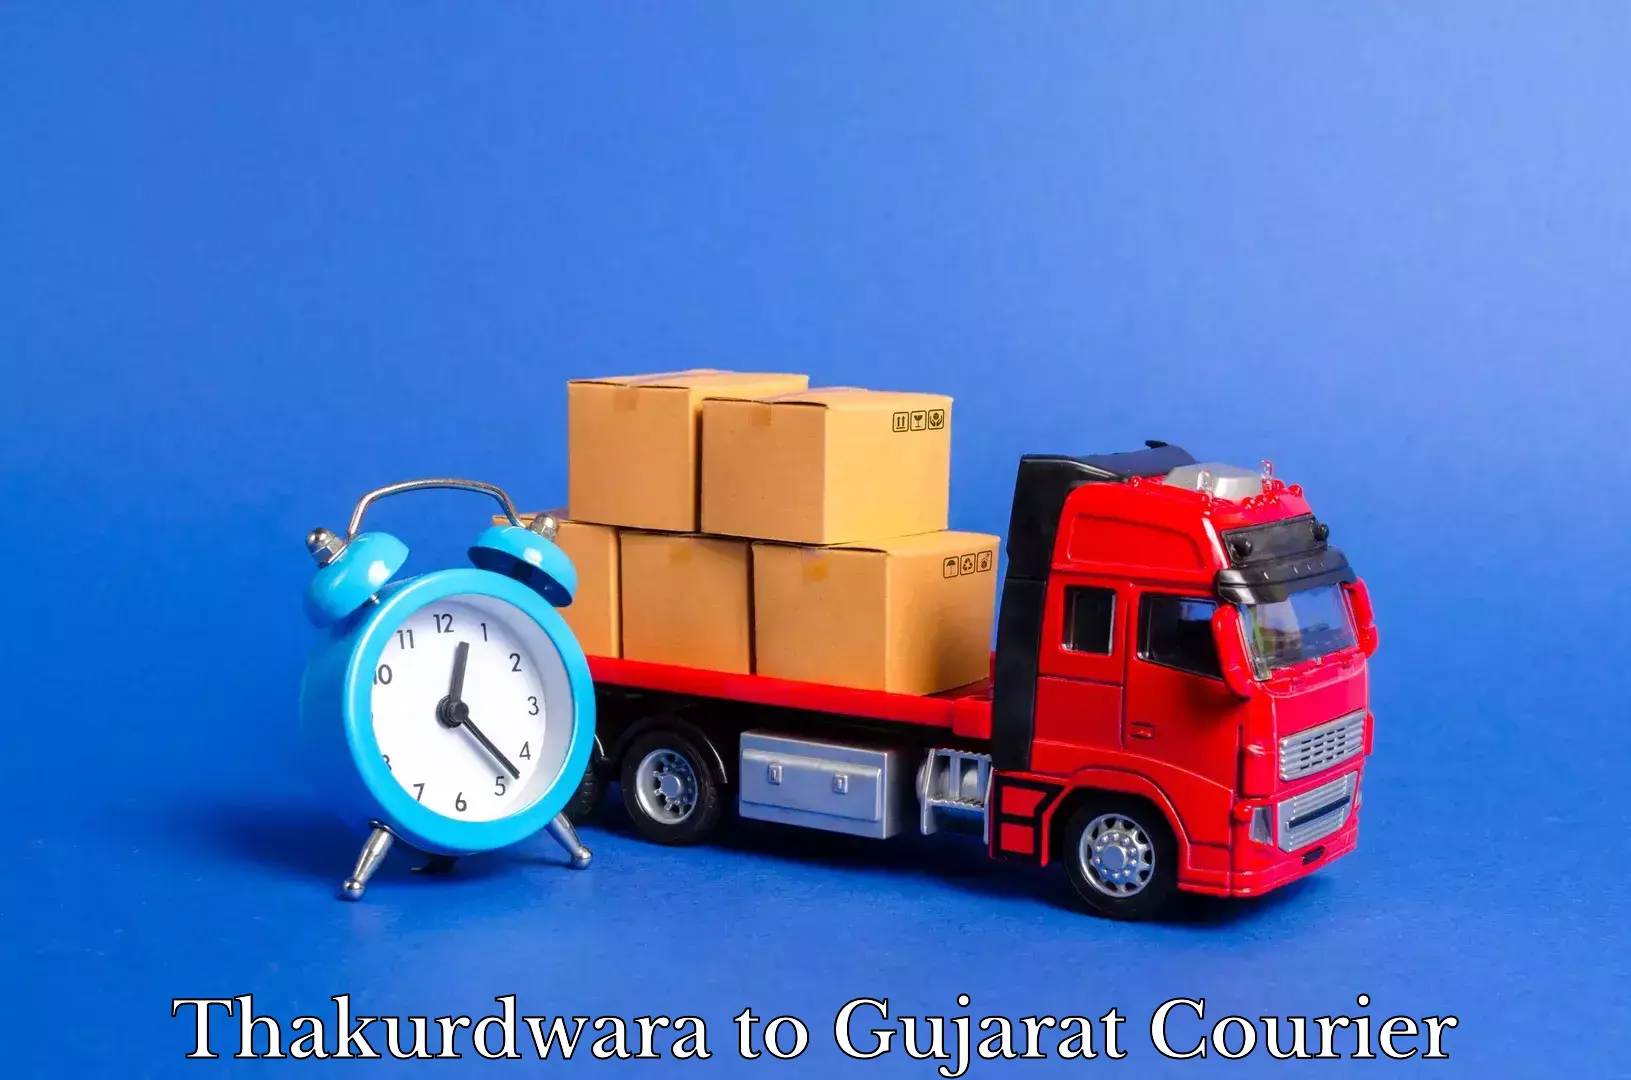 Professional packing services Thakurdwara to Gujarat